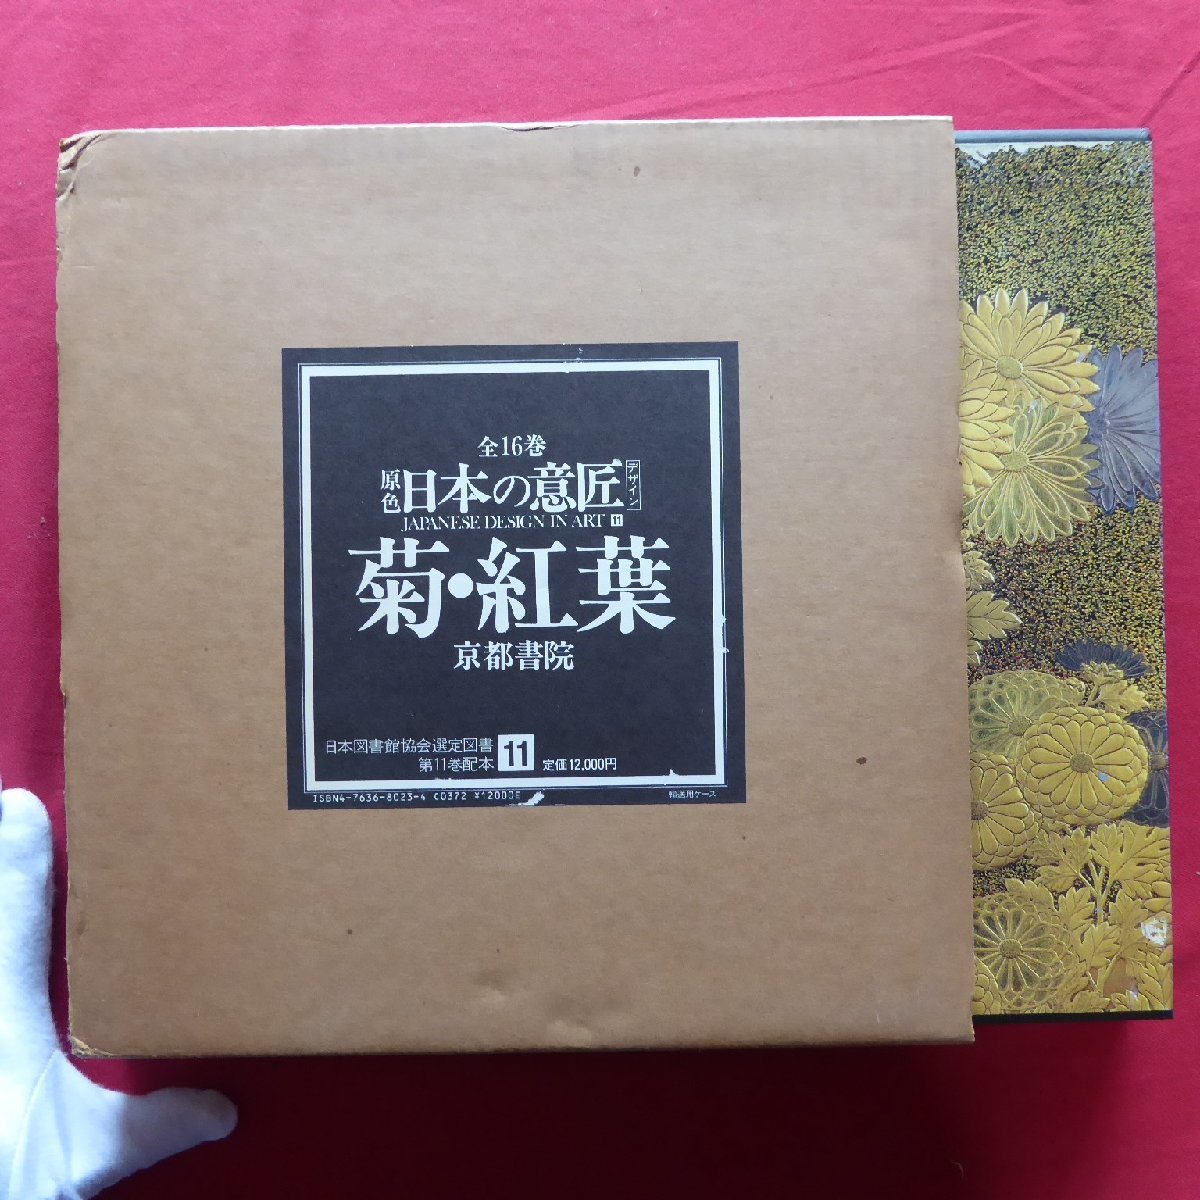 Grande 22 [Color primario Diseño japonés 11 - Crisantemos y hojas de otoño/Kyoto Shoin, 1985] Diseño/Pintura/Lacados/Cerámica/Metalistería/Textil, Libro, revista, arte, Entretenimiento, diseño